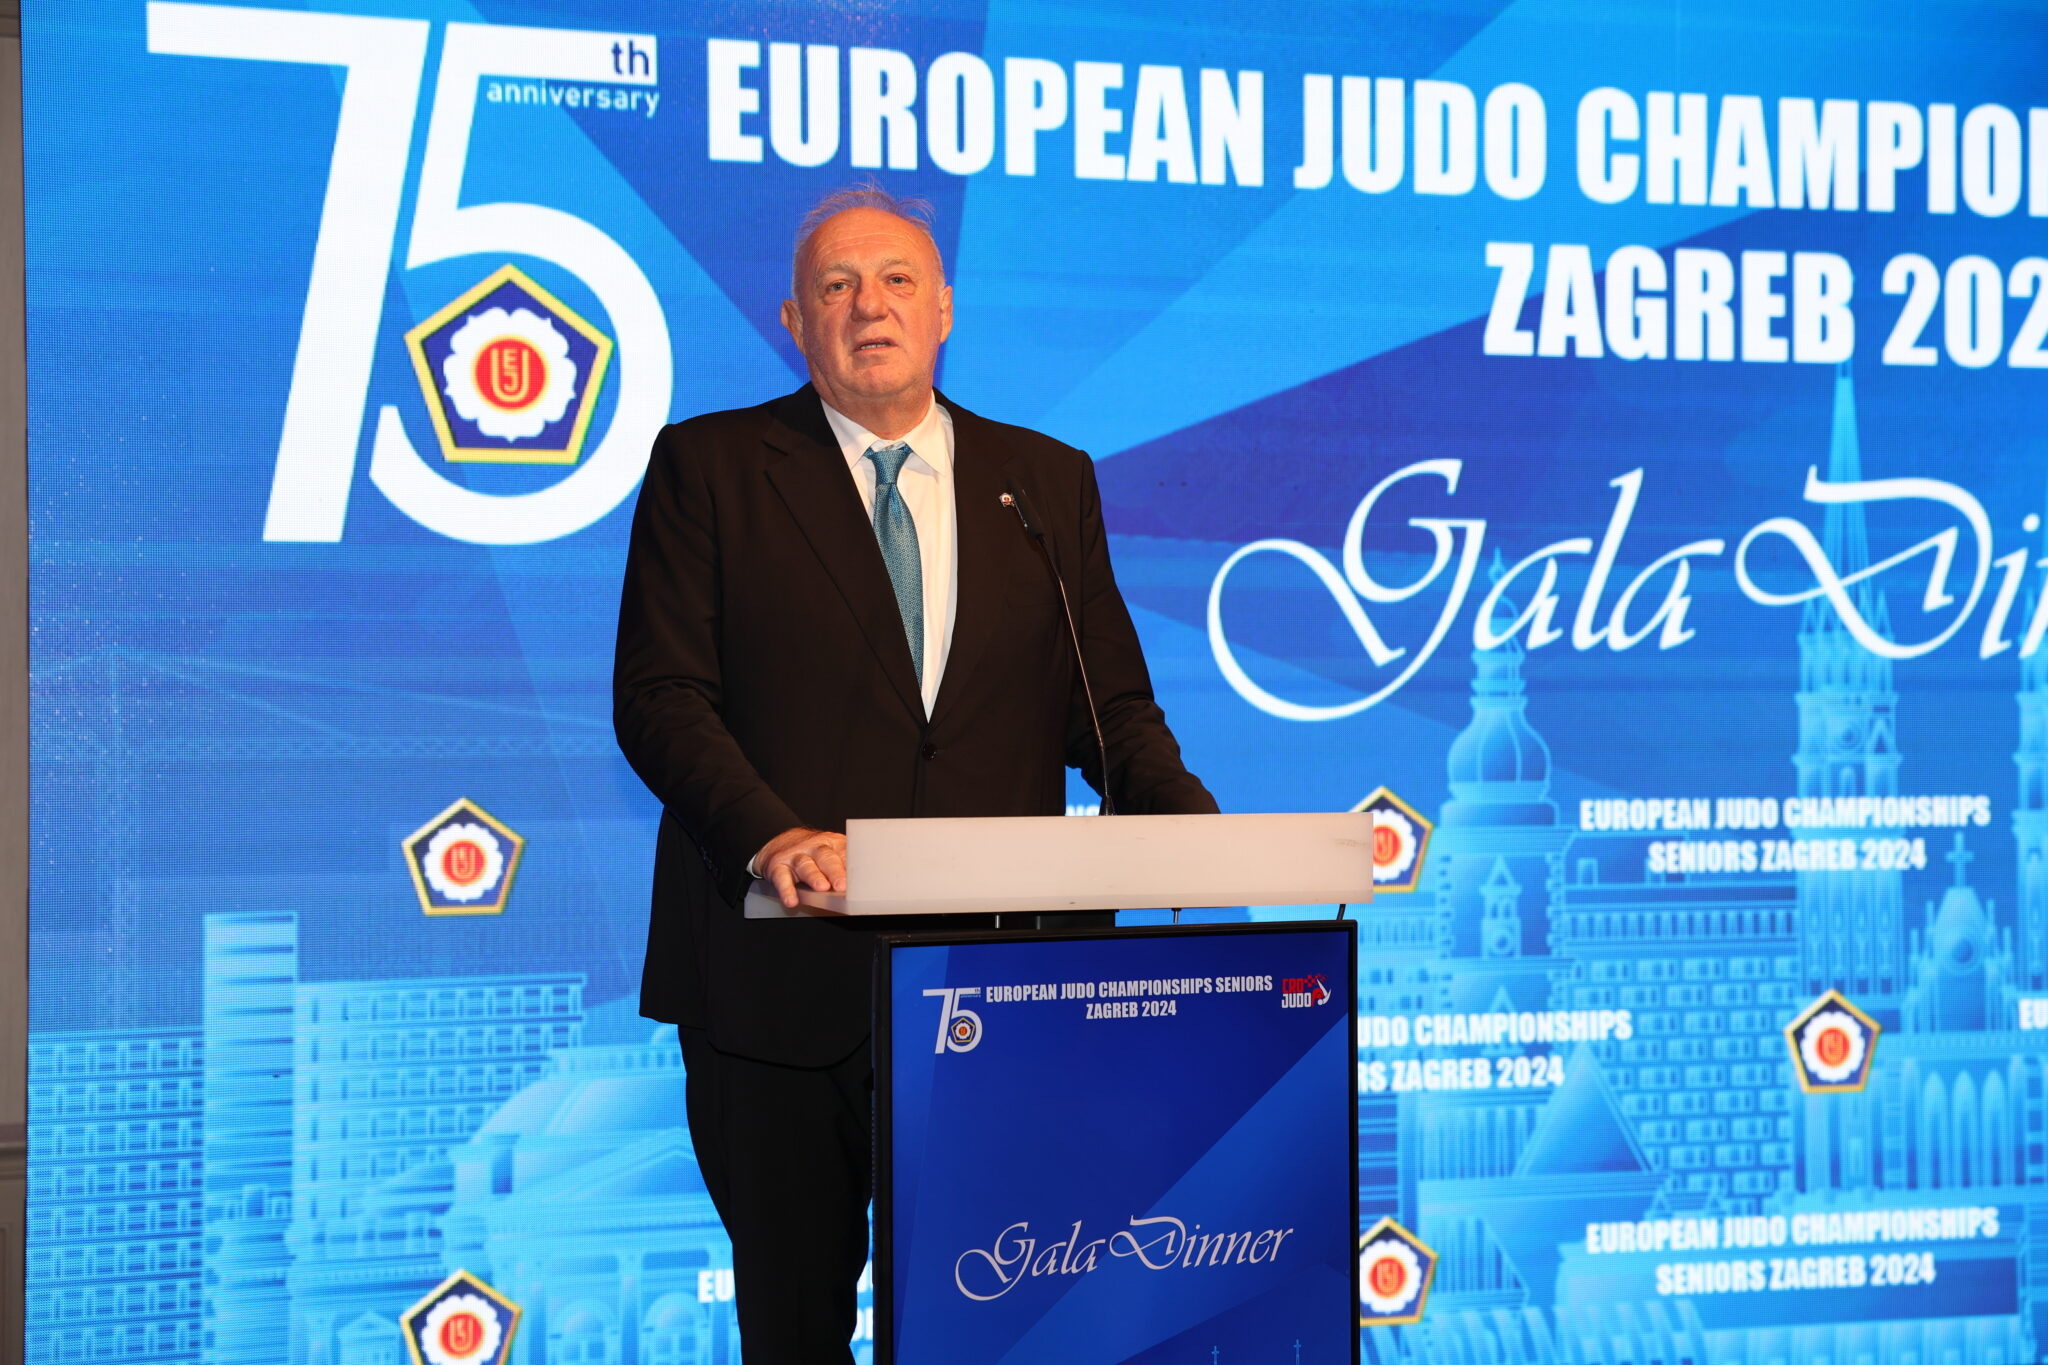 2023 AWARDEES CELEBRATED IN ZAGREB